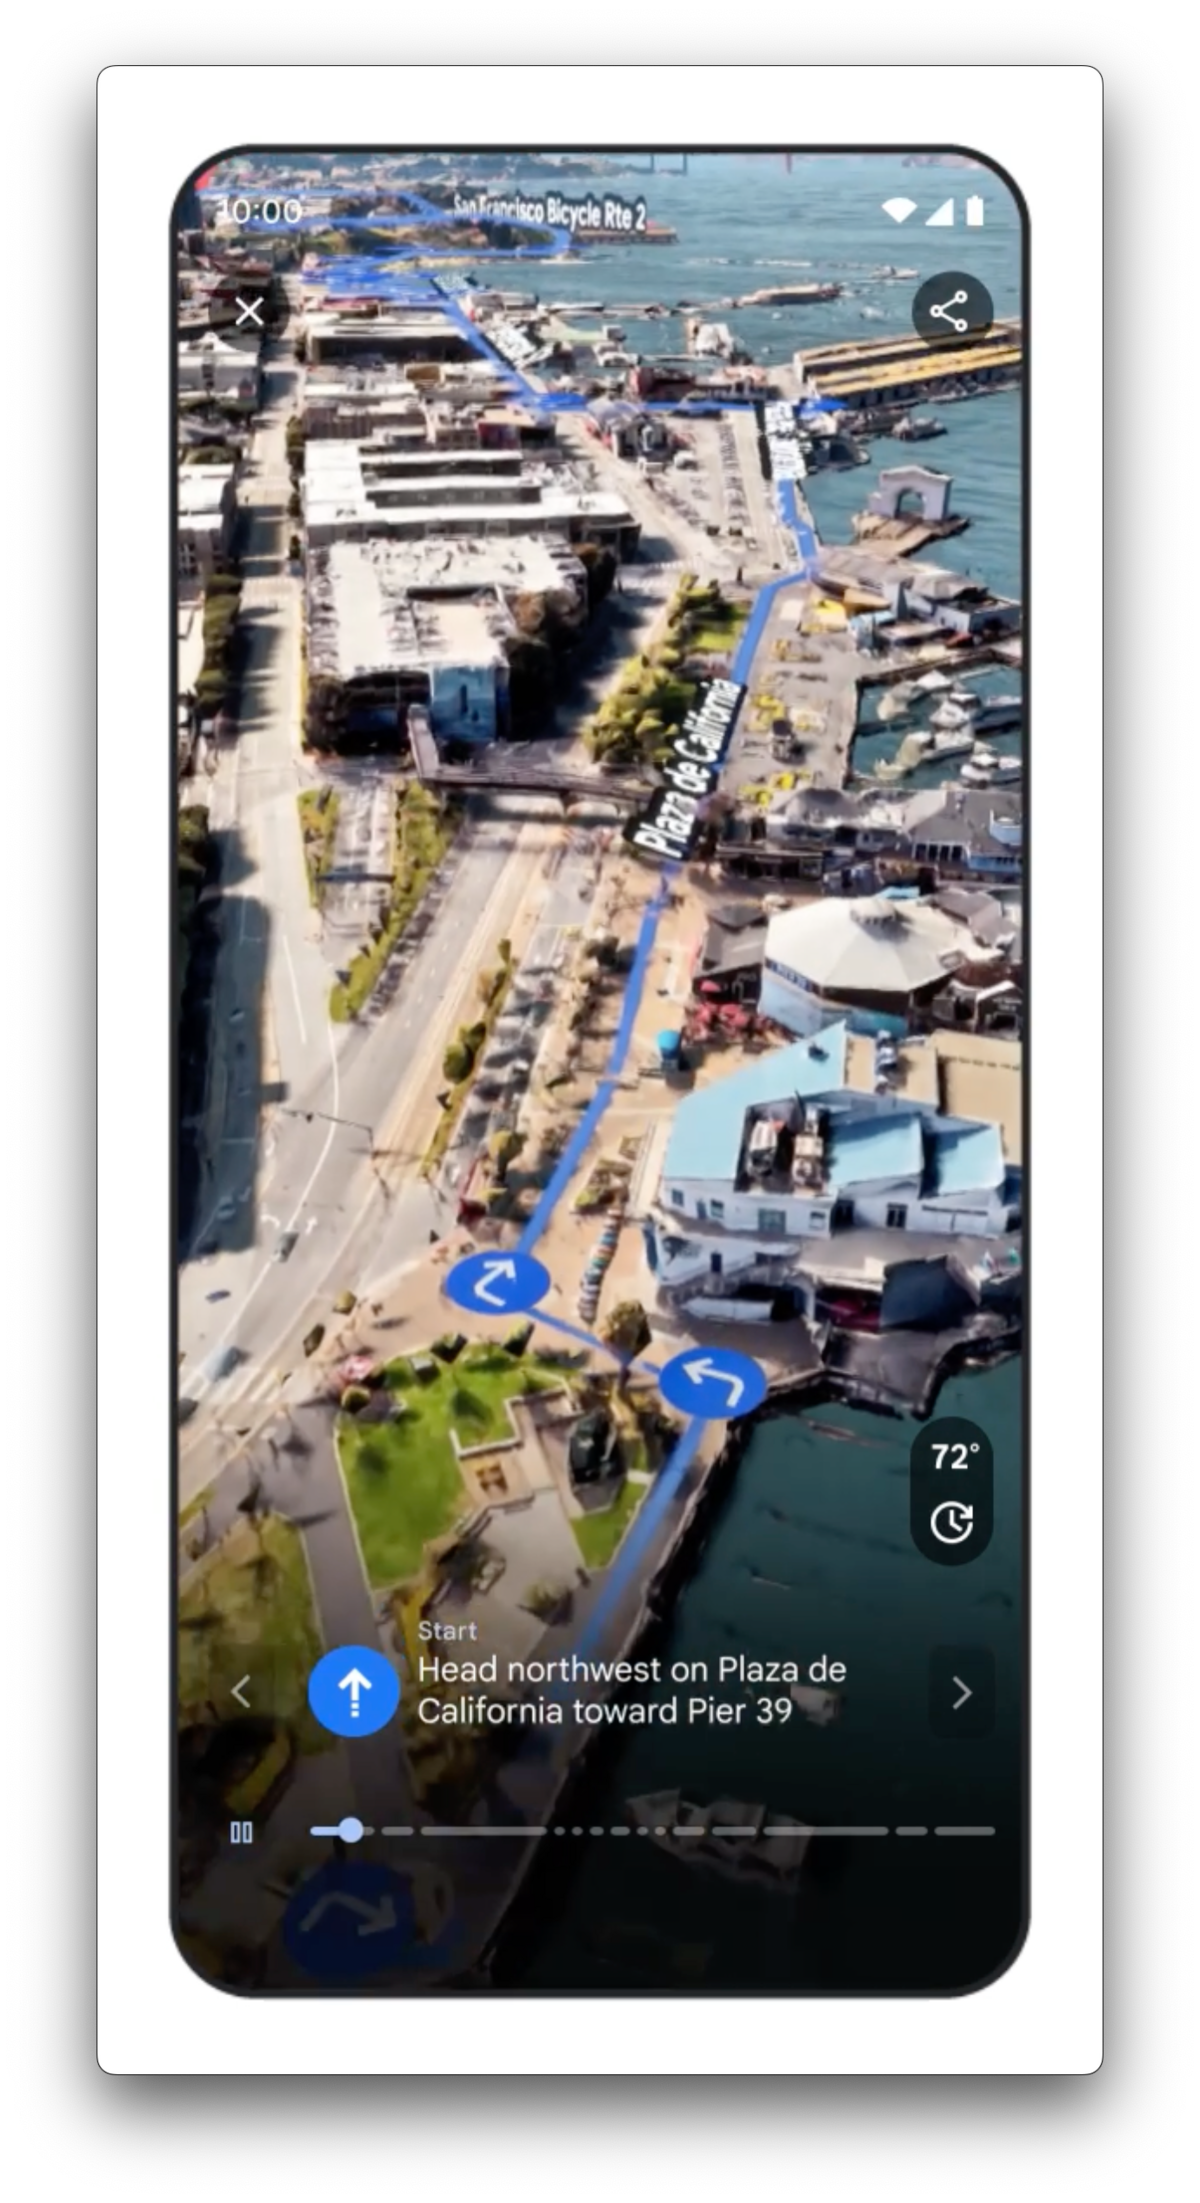 Récemment, Google a lancé Immersive View, qui permet d'obtenir une reproduction ultra-réaliste d'une ville © Google